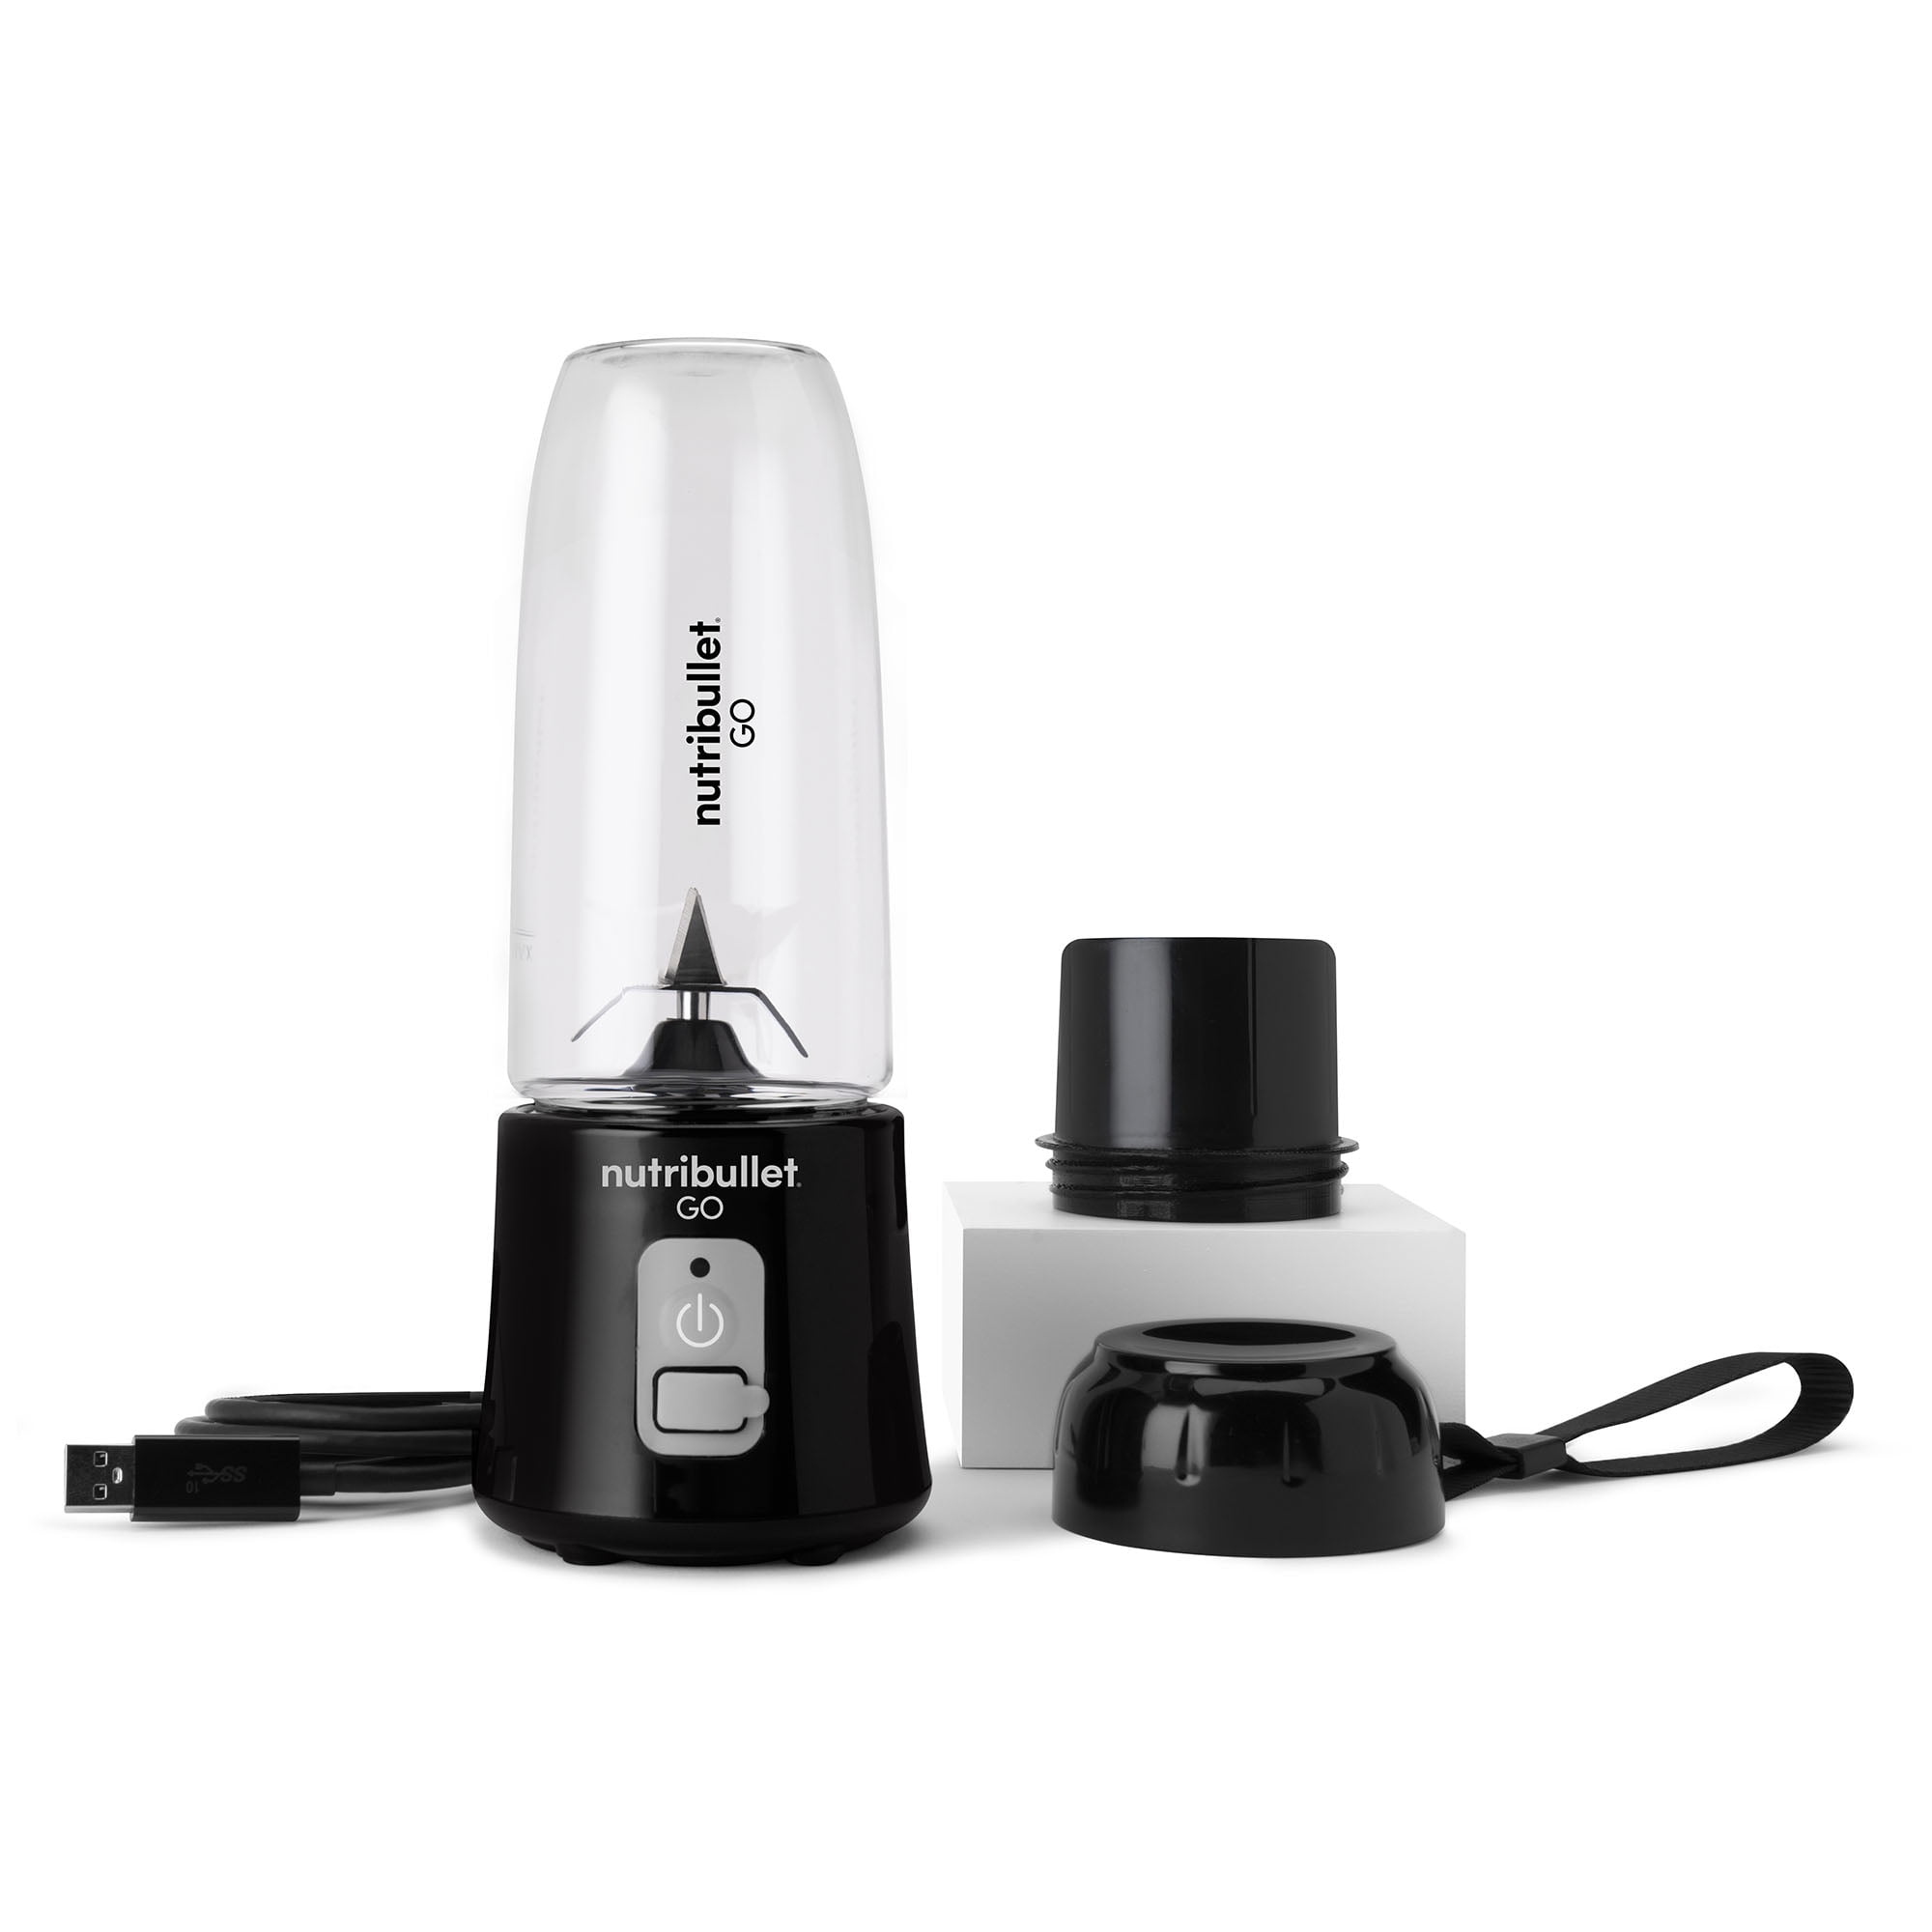 Nutribullet Go Portable Cordless Personal Blender, Black, NB50300